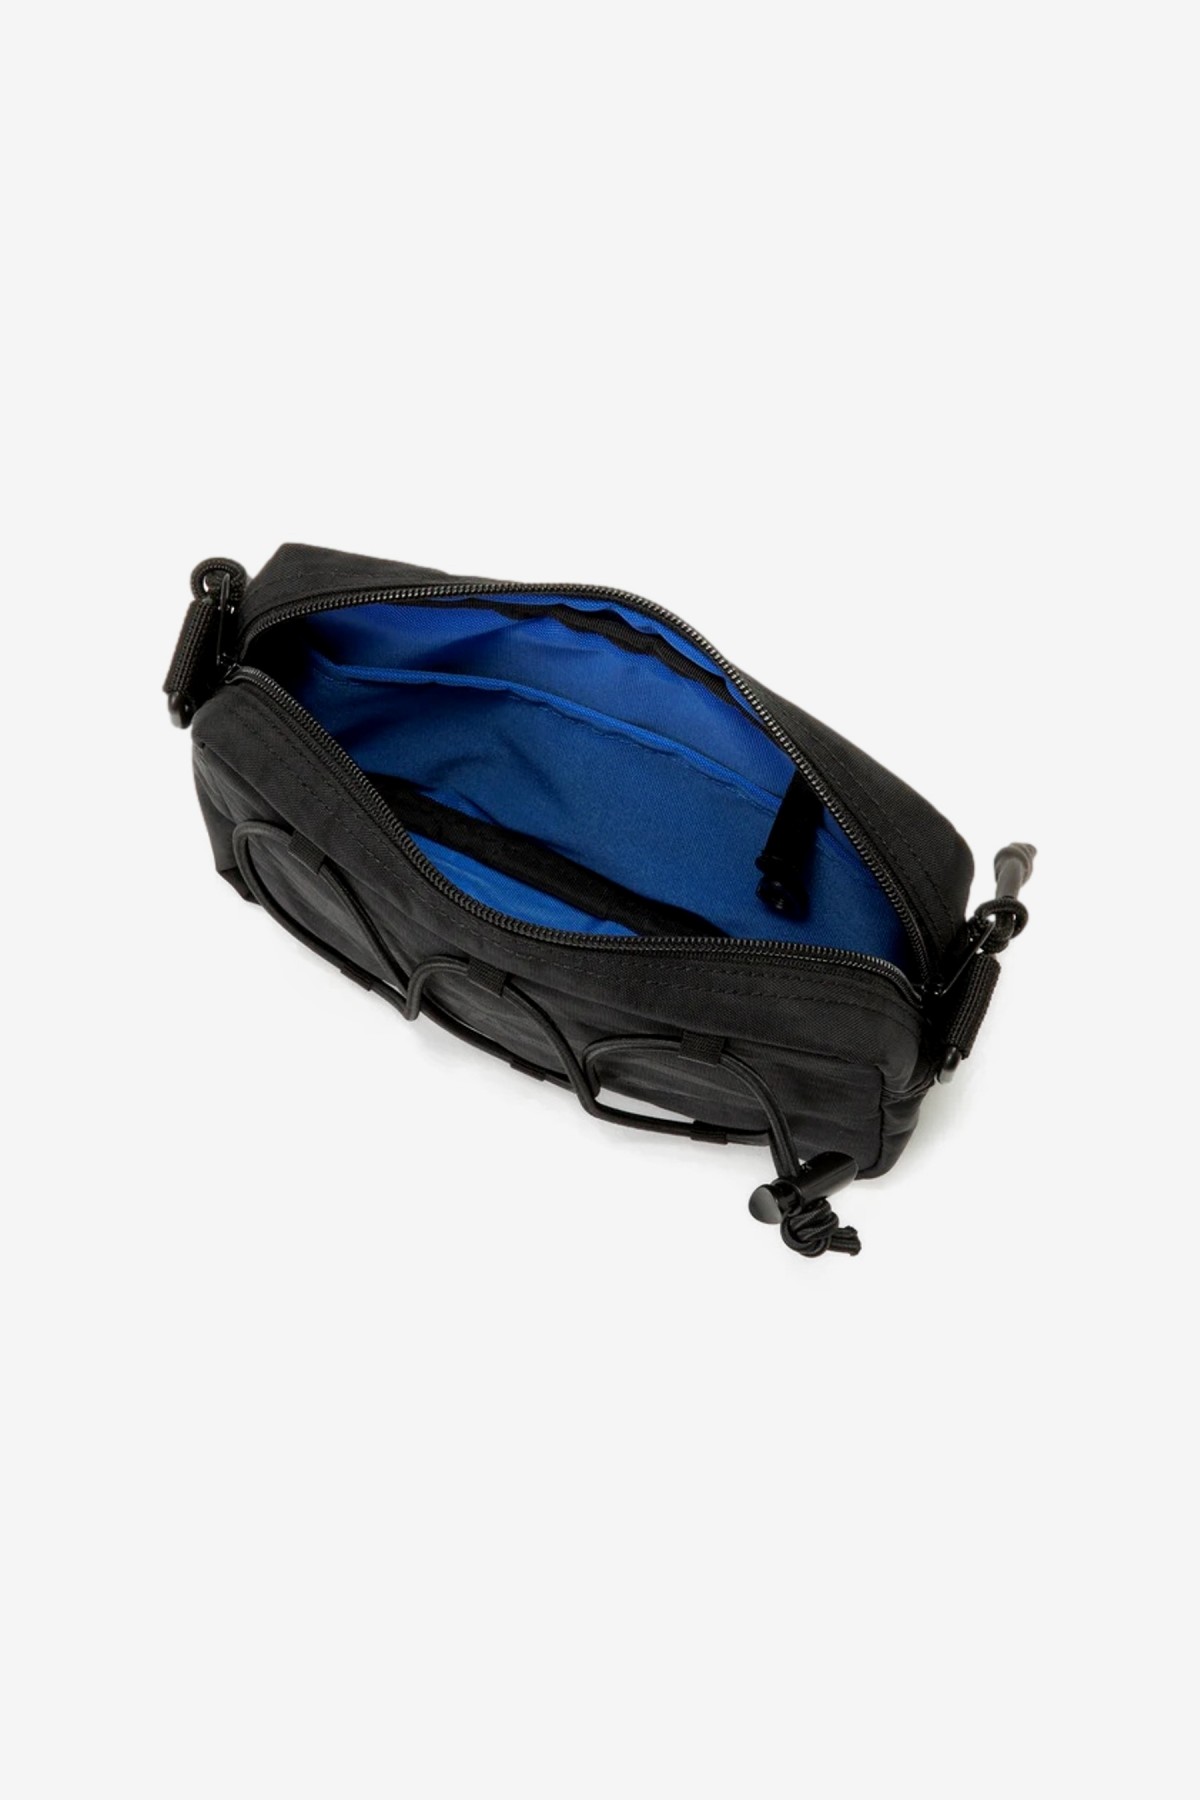 Manastash Attachable Shoulder Bag in Black